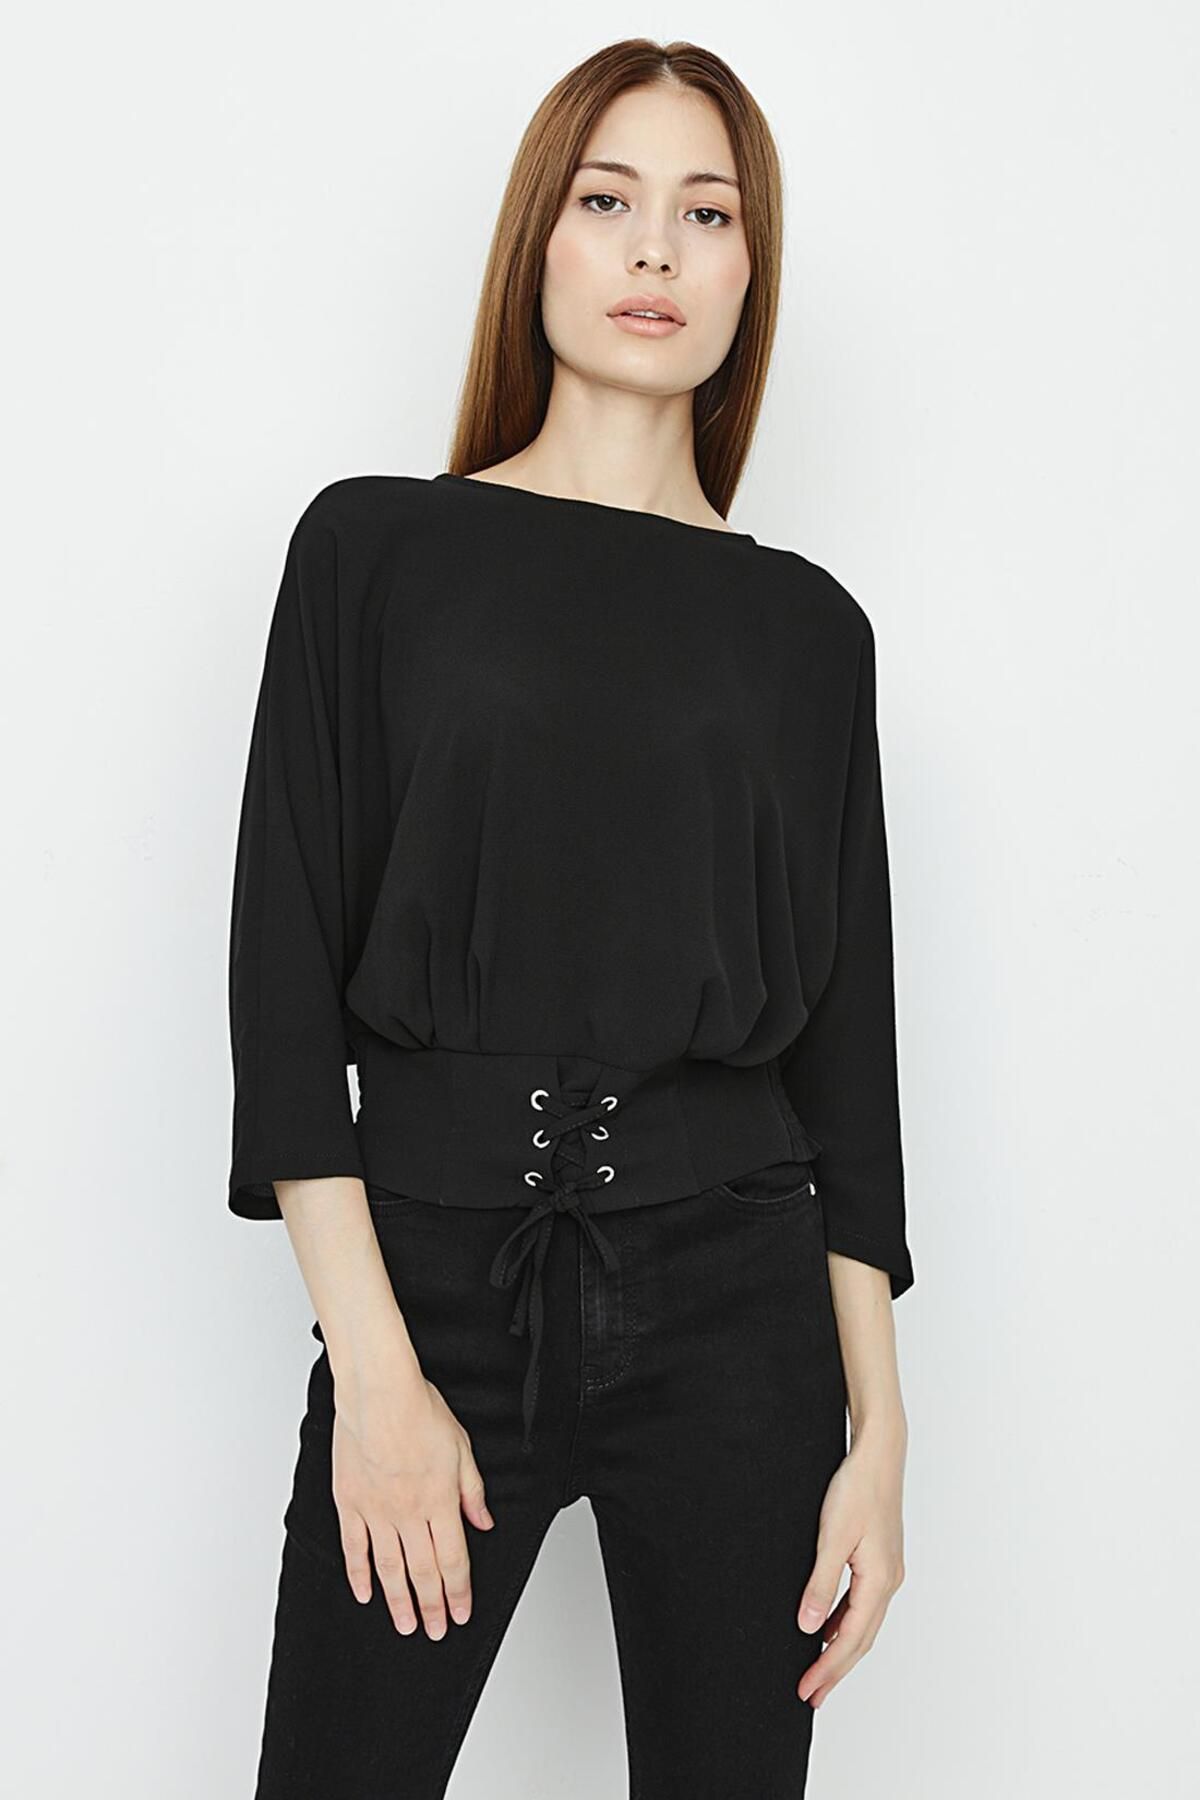 Select Moda Kadın Siyah Bel Detaylı Crop Bluz